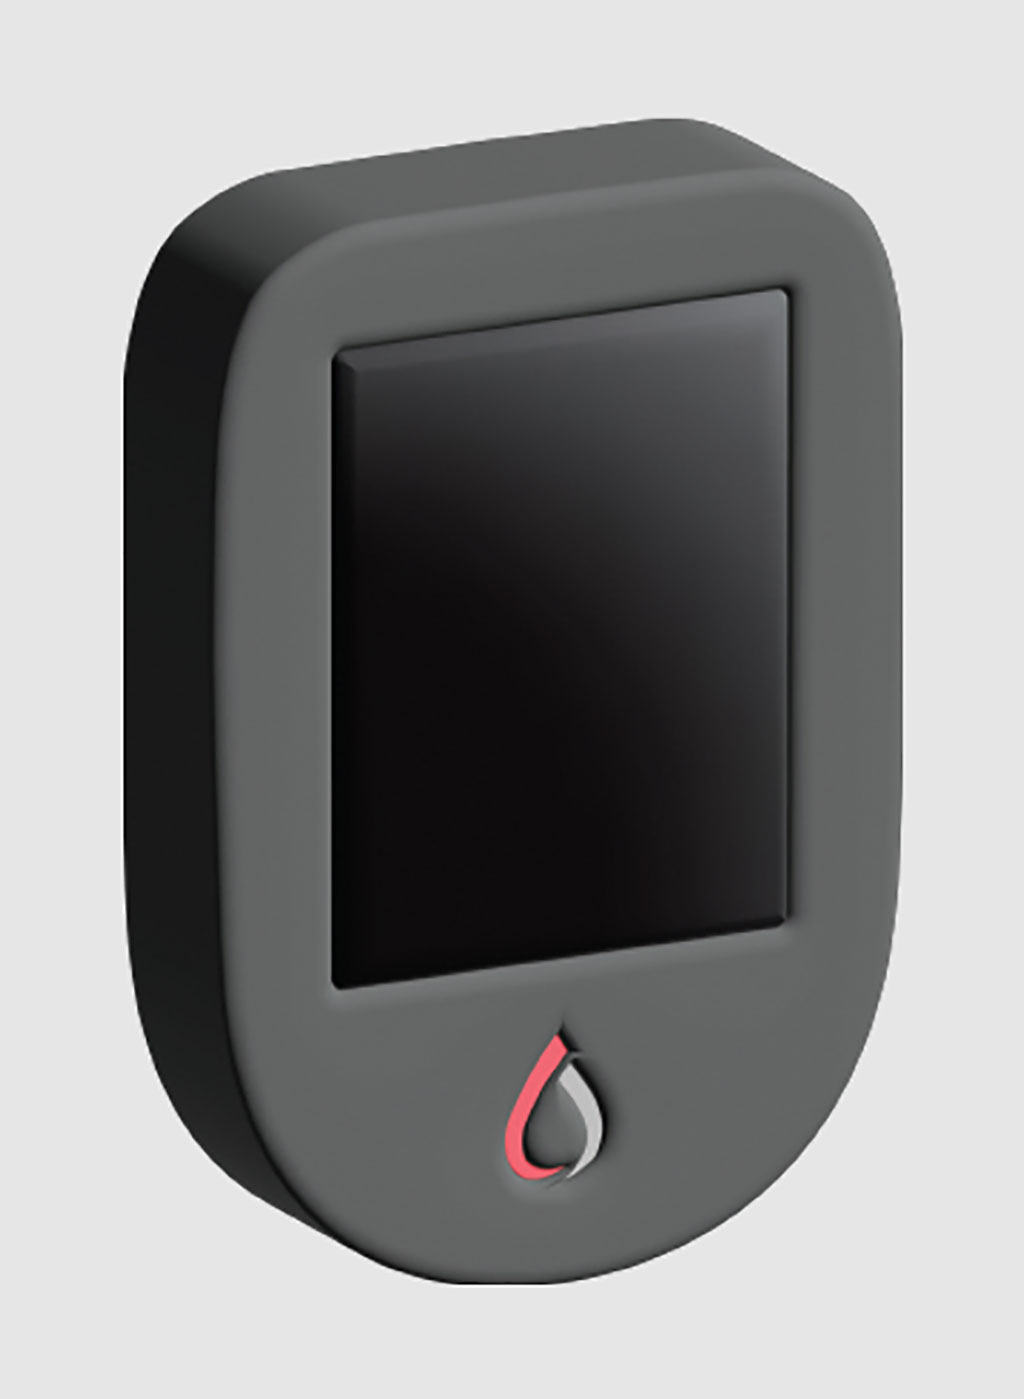 Imagen: HemBox es una herramienta de inmunosensor POC habilitada para Bluetooth, del tamaño de un iPhone que ofrece resultados sensibles, selectivos y medibles en minutos (Fotografía cortesía de Hememics)